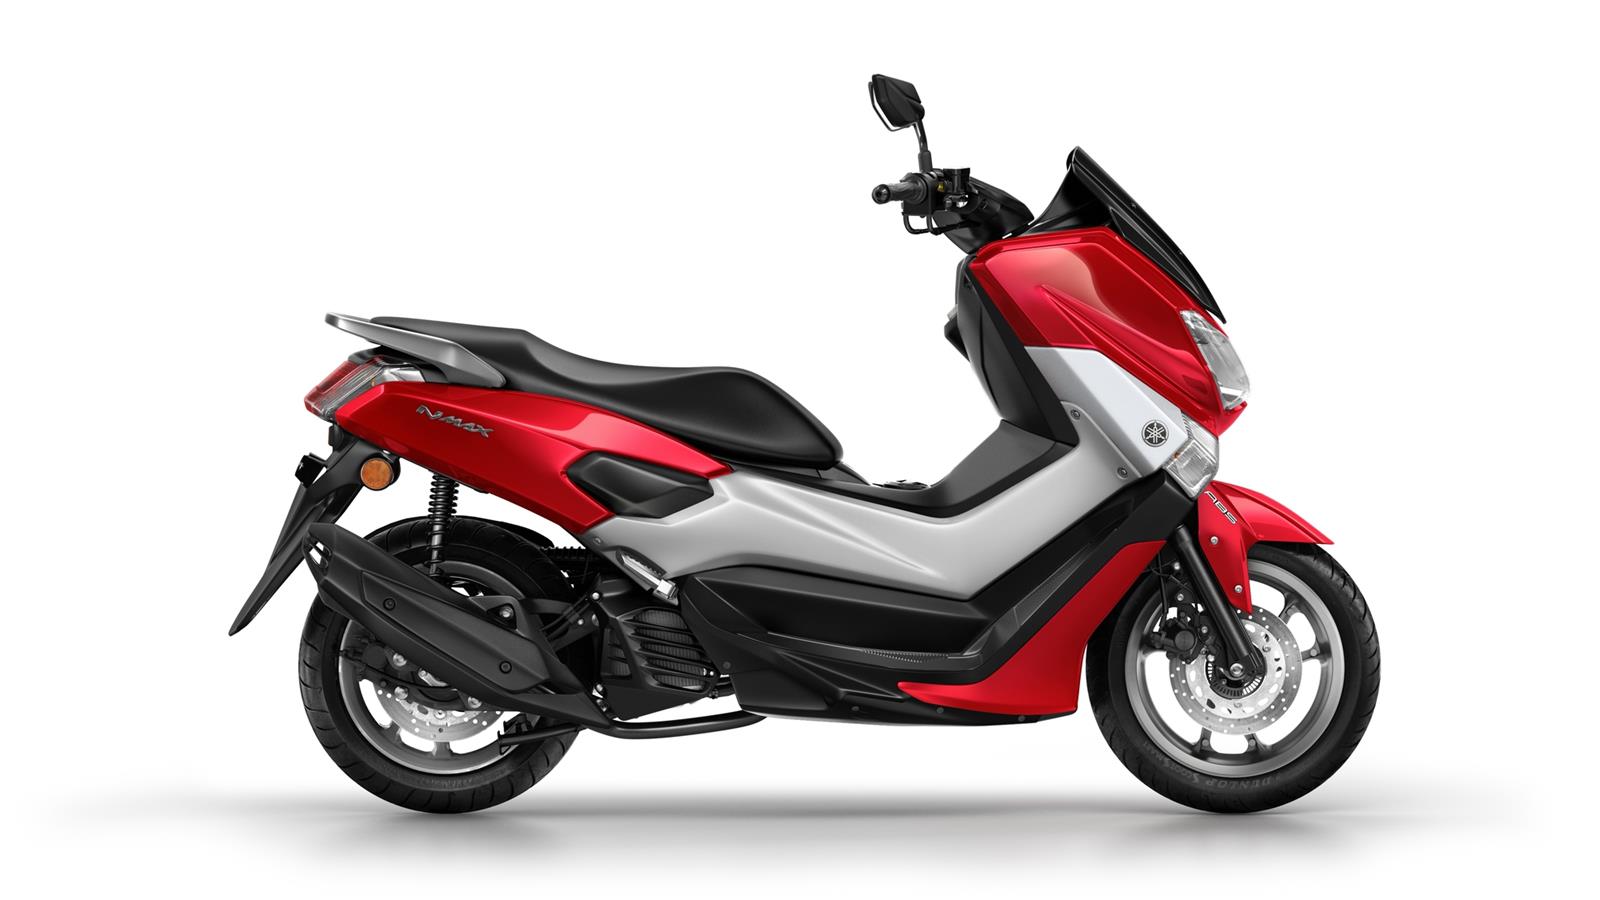 Stile al top, costo da entry level. NMAX è uno scooter da città entry level di qualità superiore, con prestazioni grintose, consumi minimi, uno stile dinamico e tanta praticità.